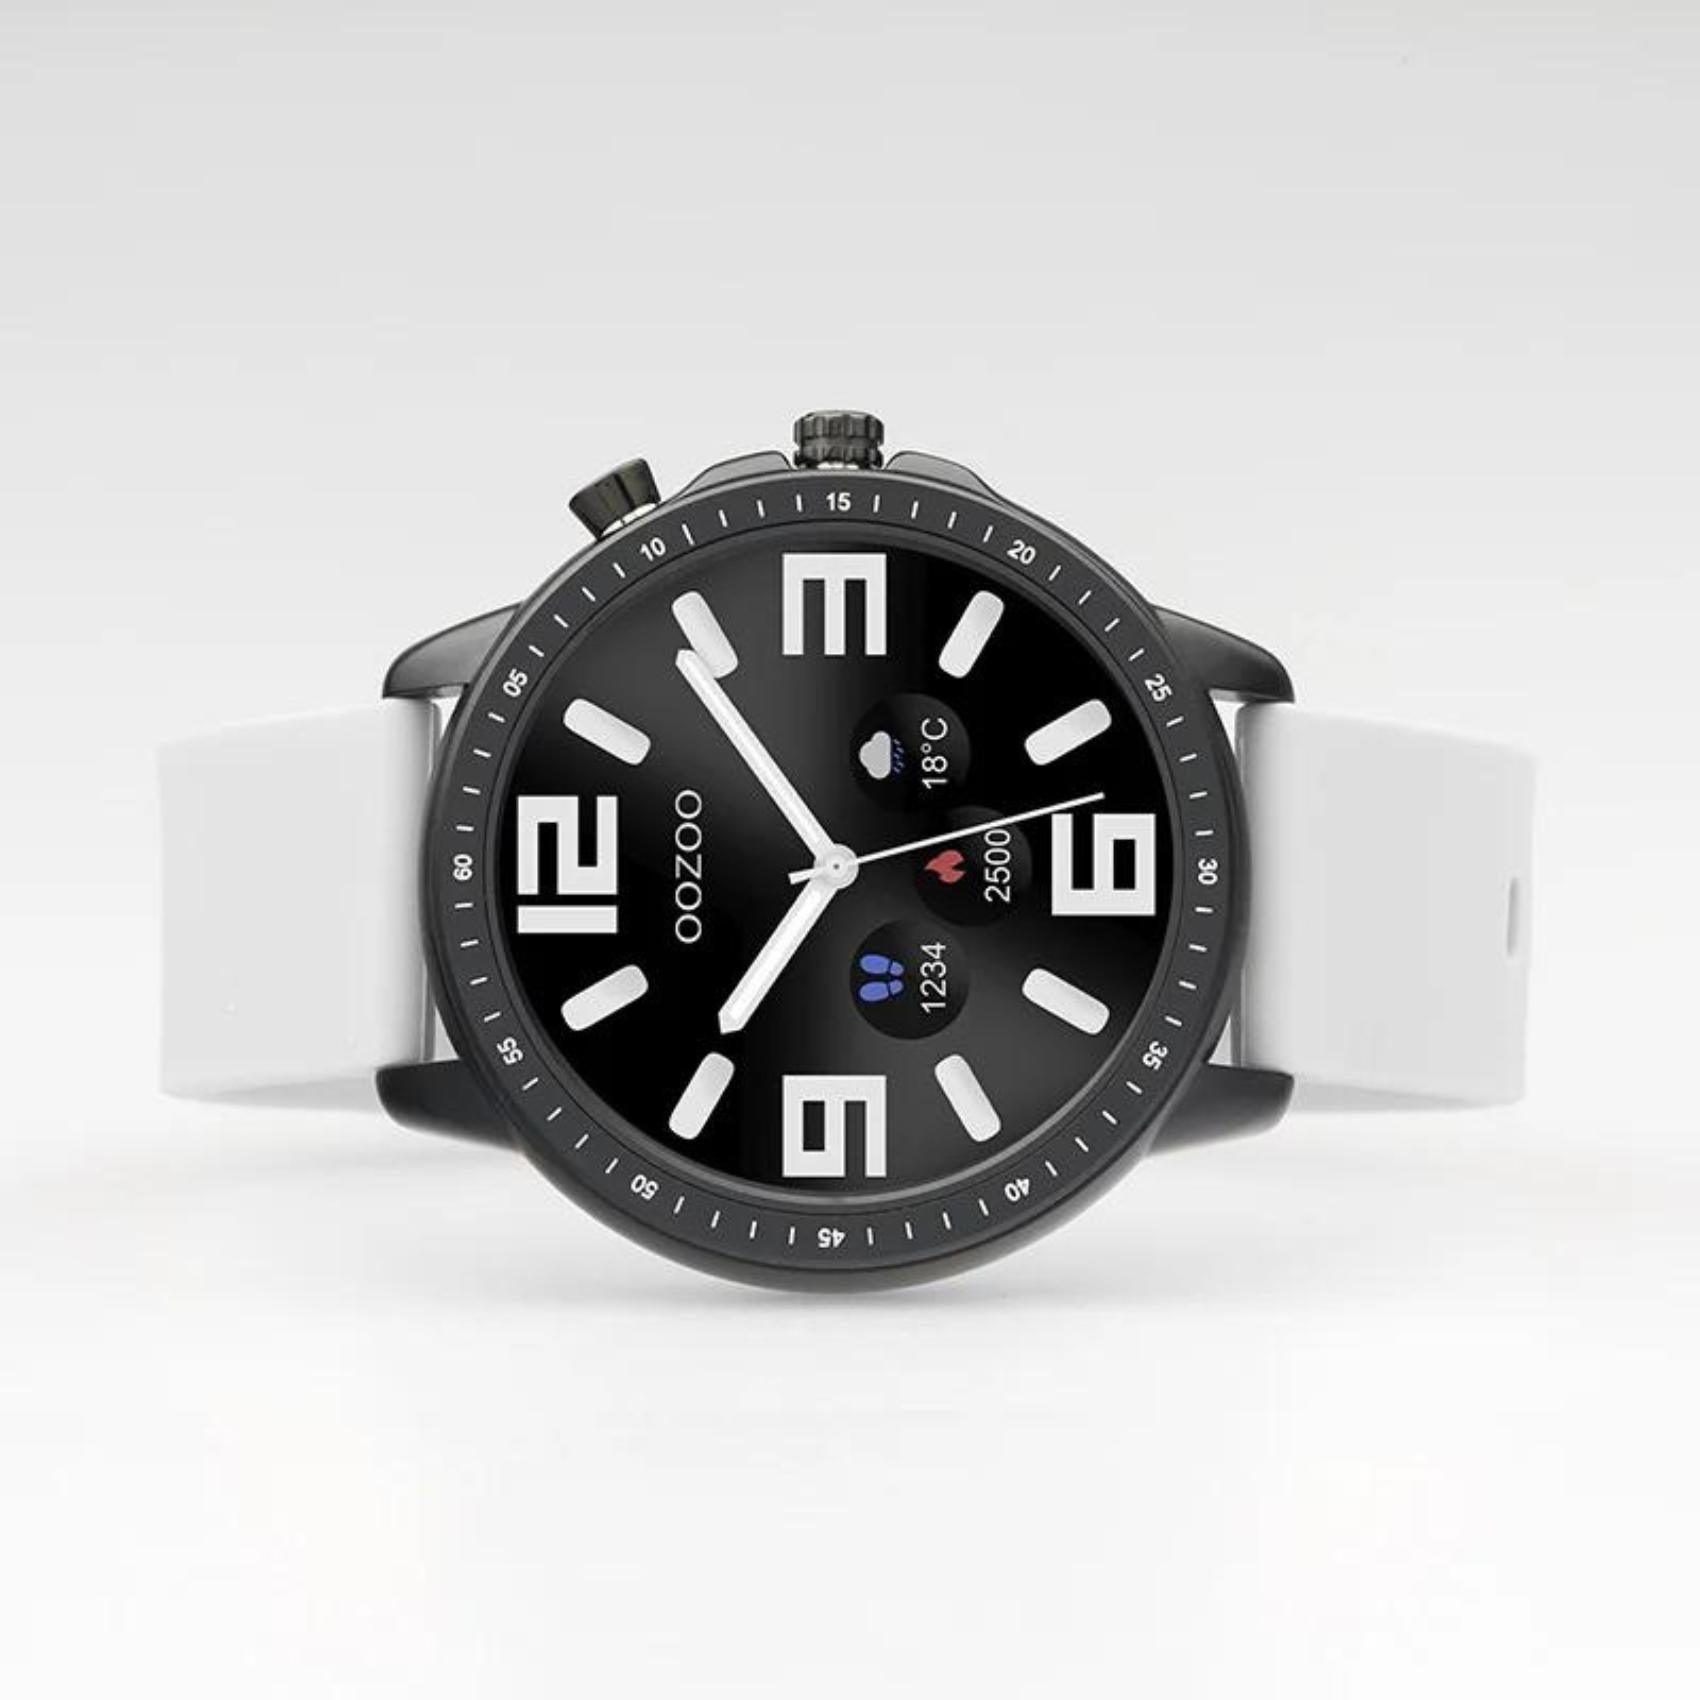 Smartwatch Oozoo Q00328 με γκρι καουτσούκ λουράκι και μαύρη  κάσα.